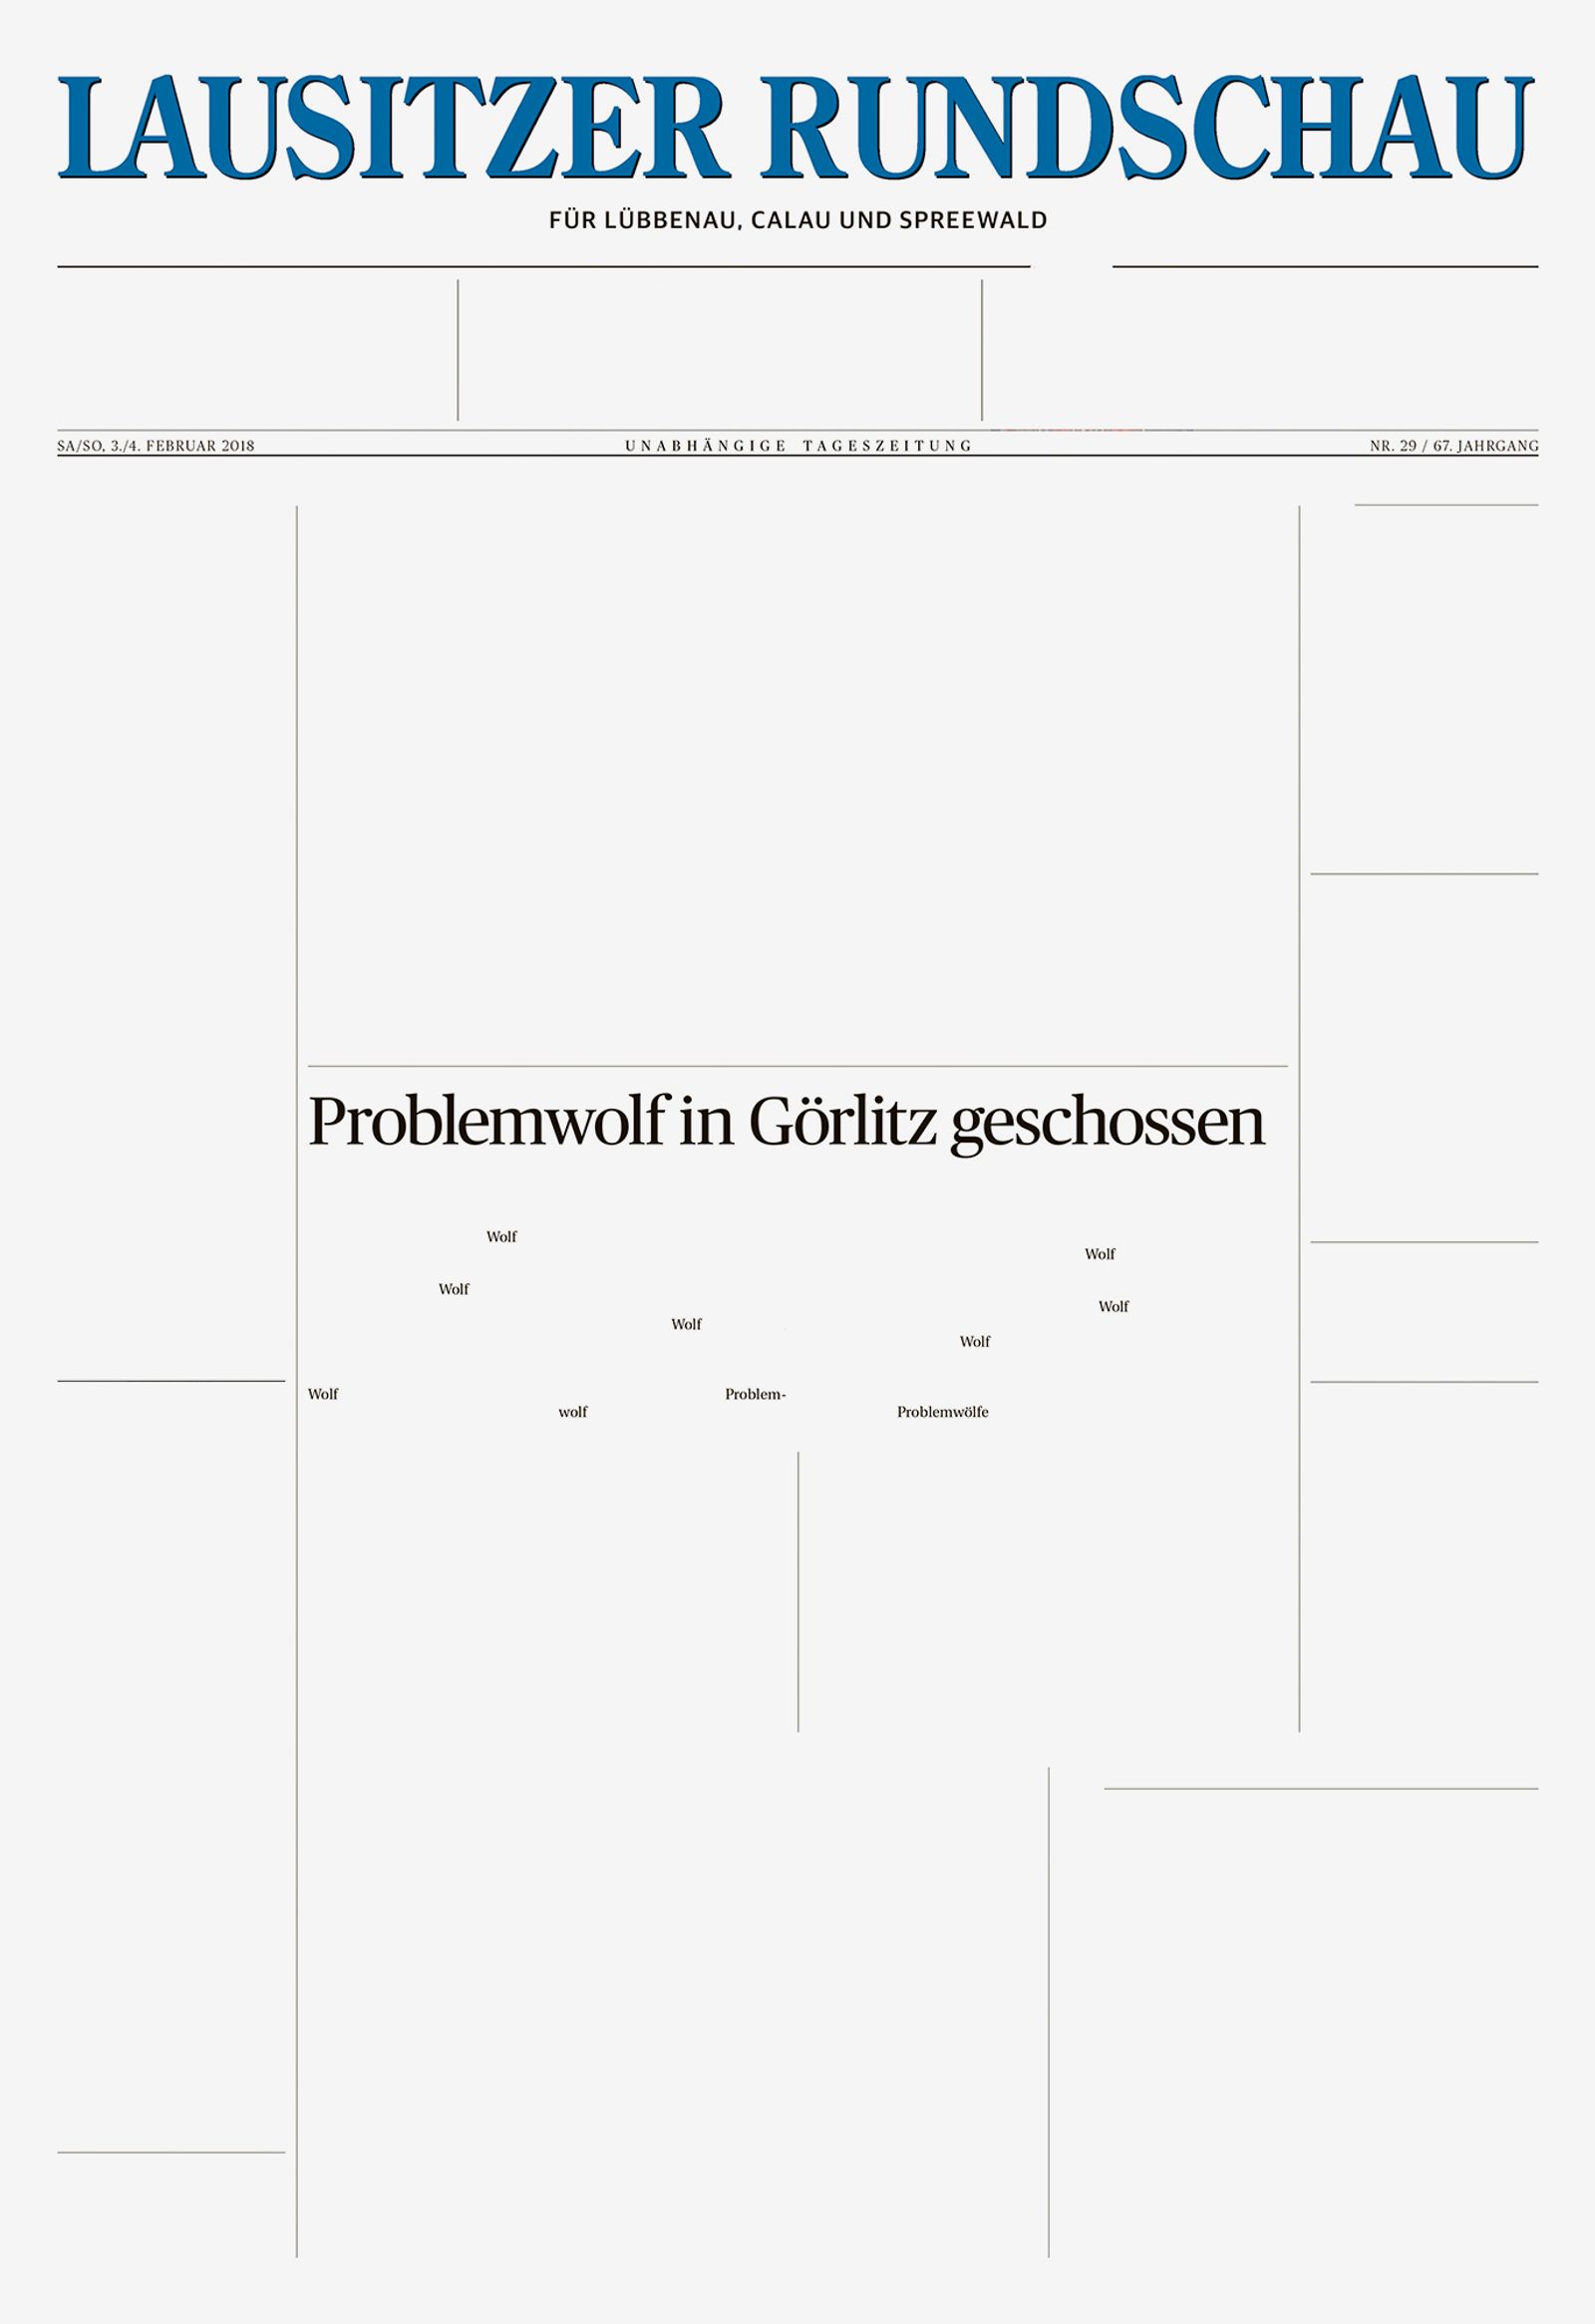 © Hannes Jung - Newspaper "Lausitzer Rundschau", title: "Problem wolf shot in Görlitz"